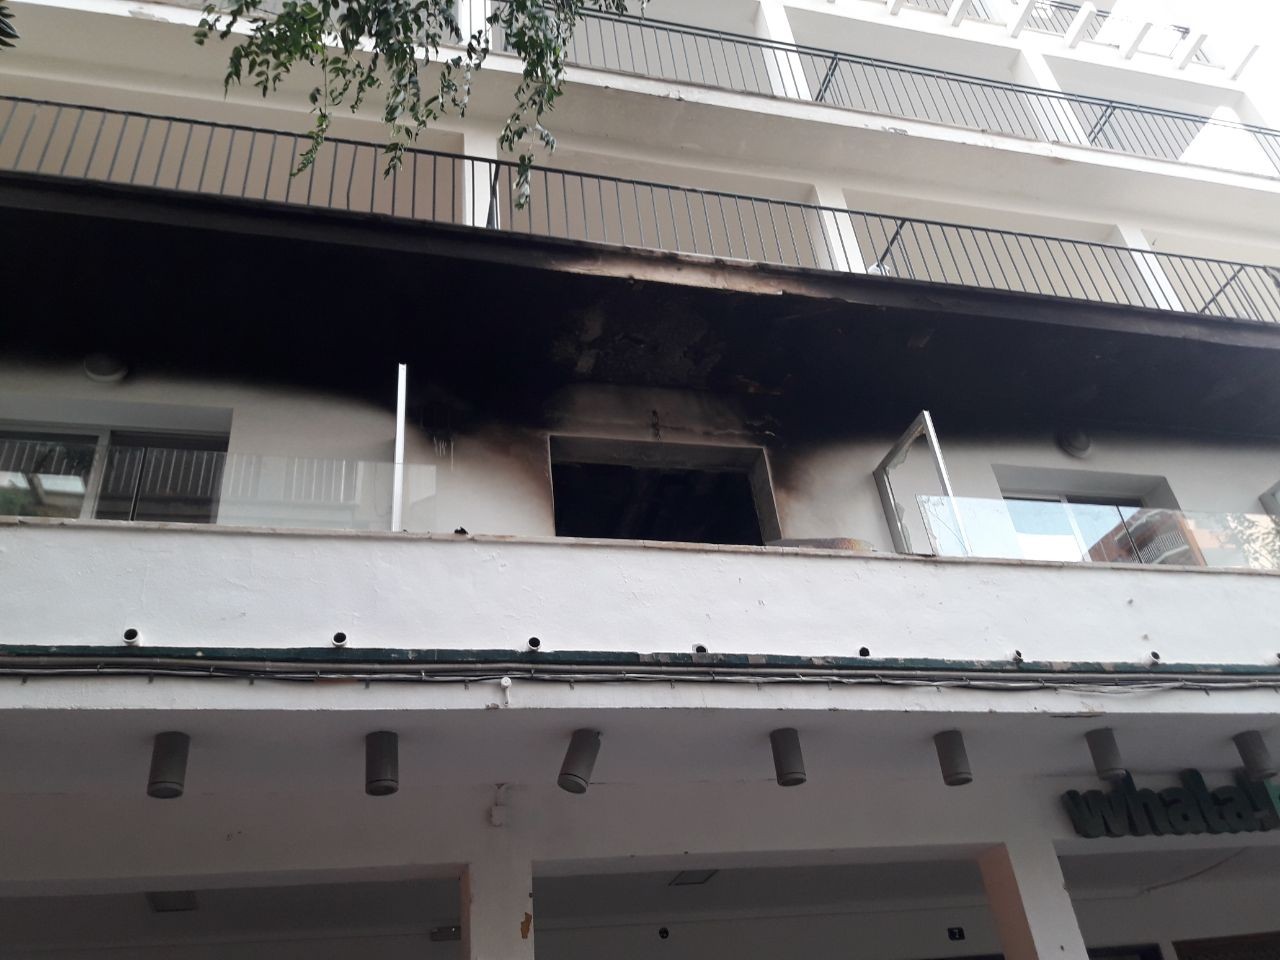 Urlaub auf Mallorca: Das von der Feuerwehr zur Verfügung gestellte Foto zeigt die ausgebrannte Fassade des Hotels.